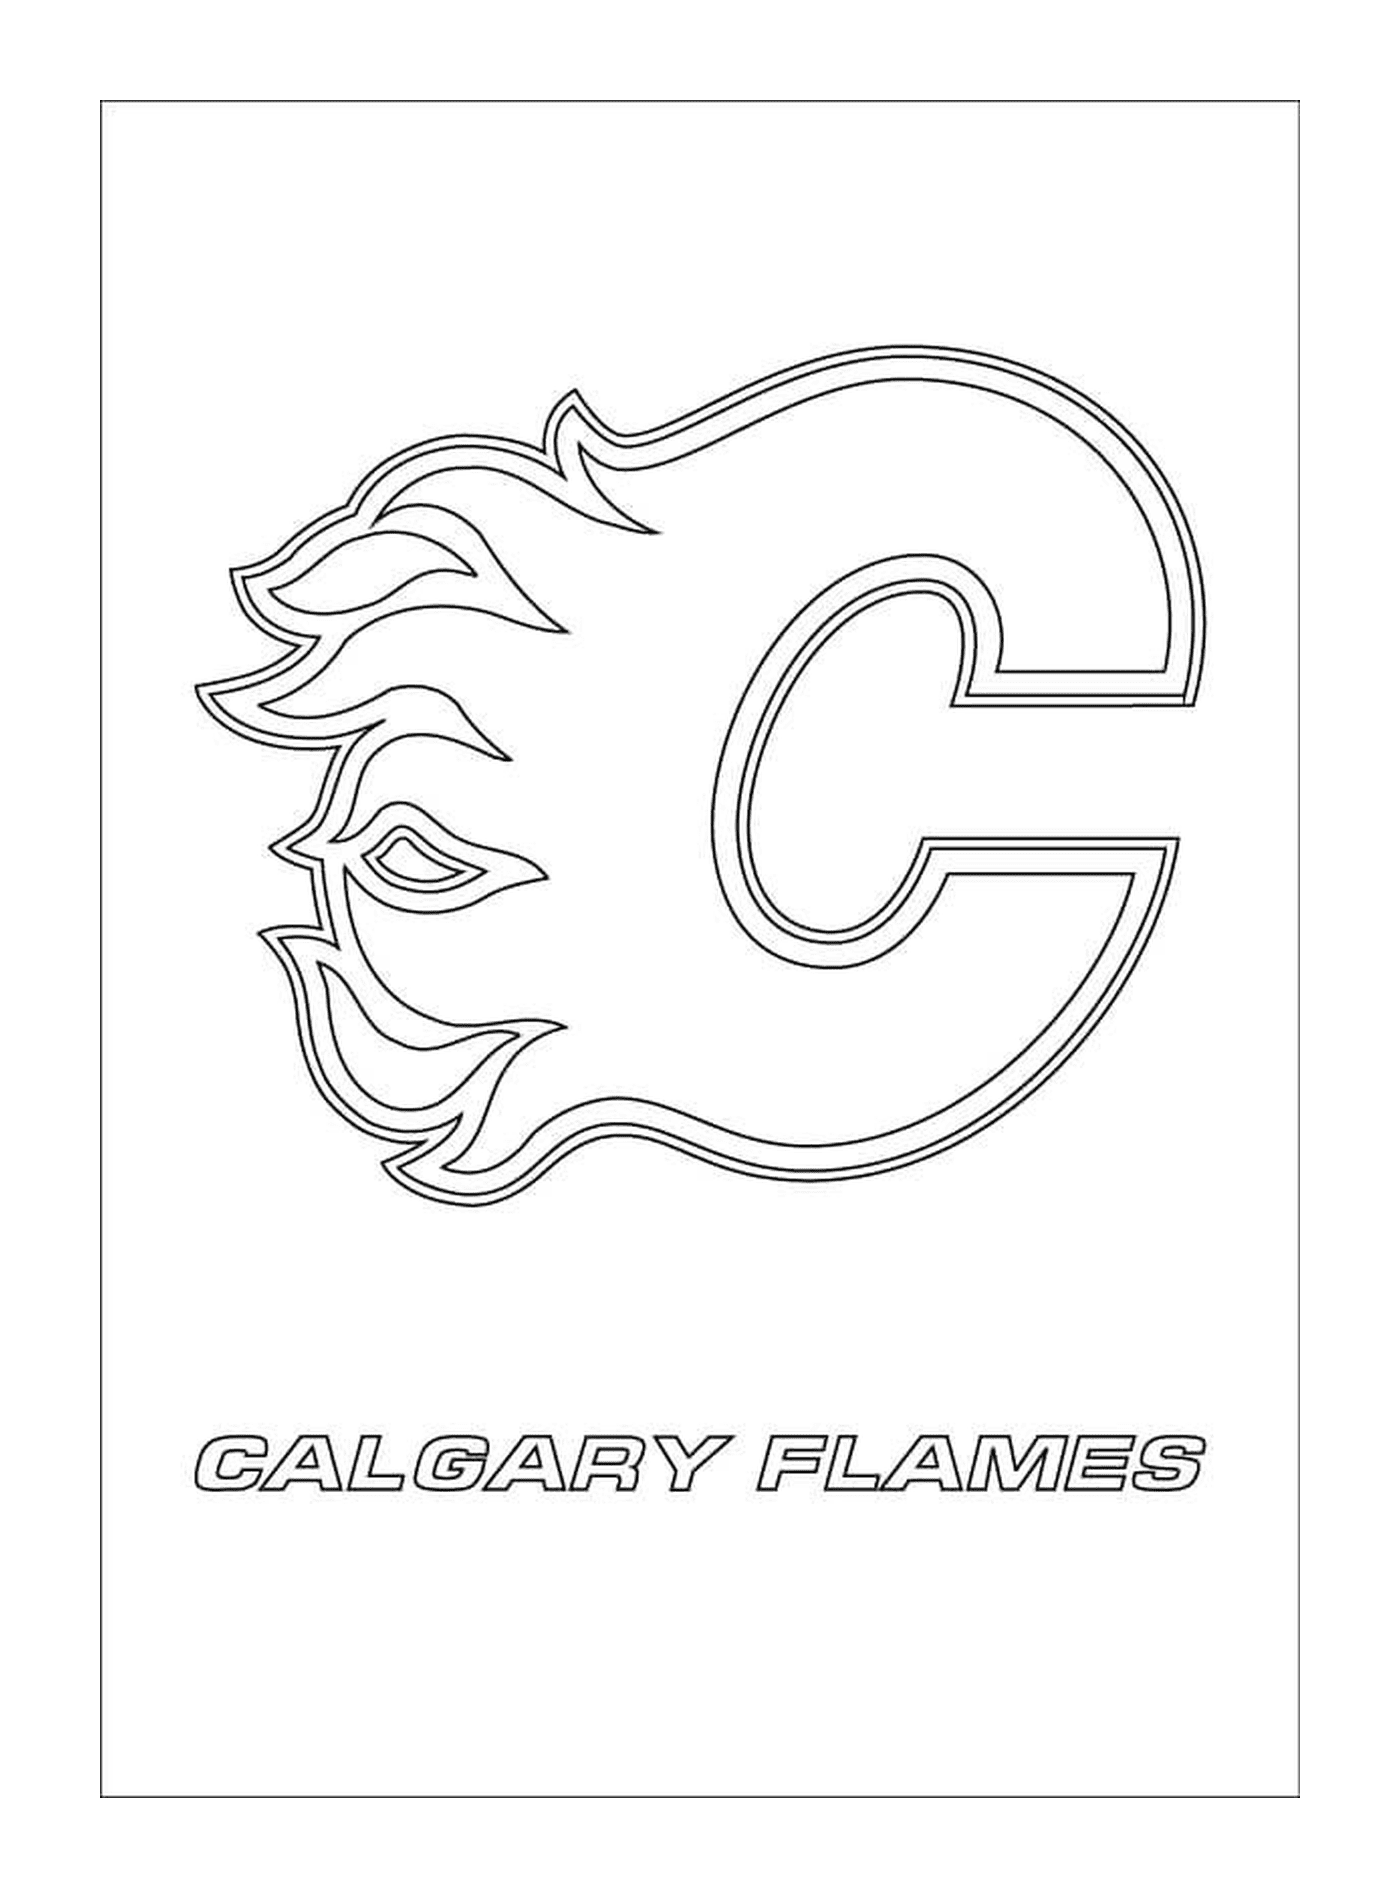  Logotipo das chamas de Calgary 